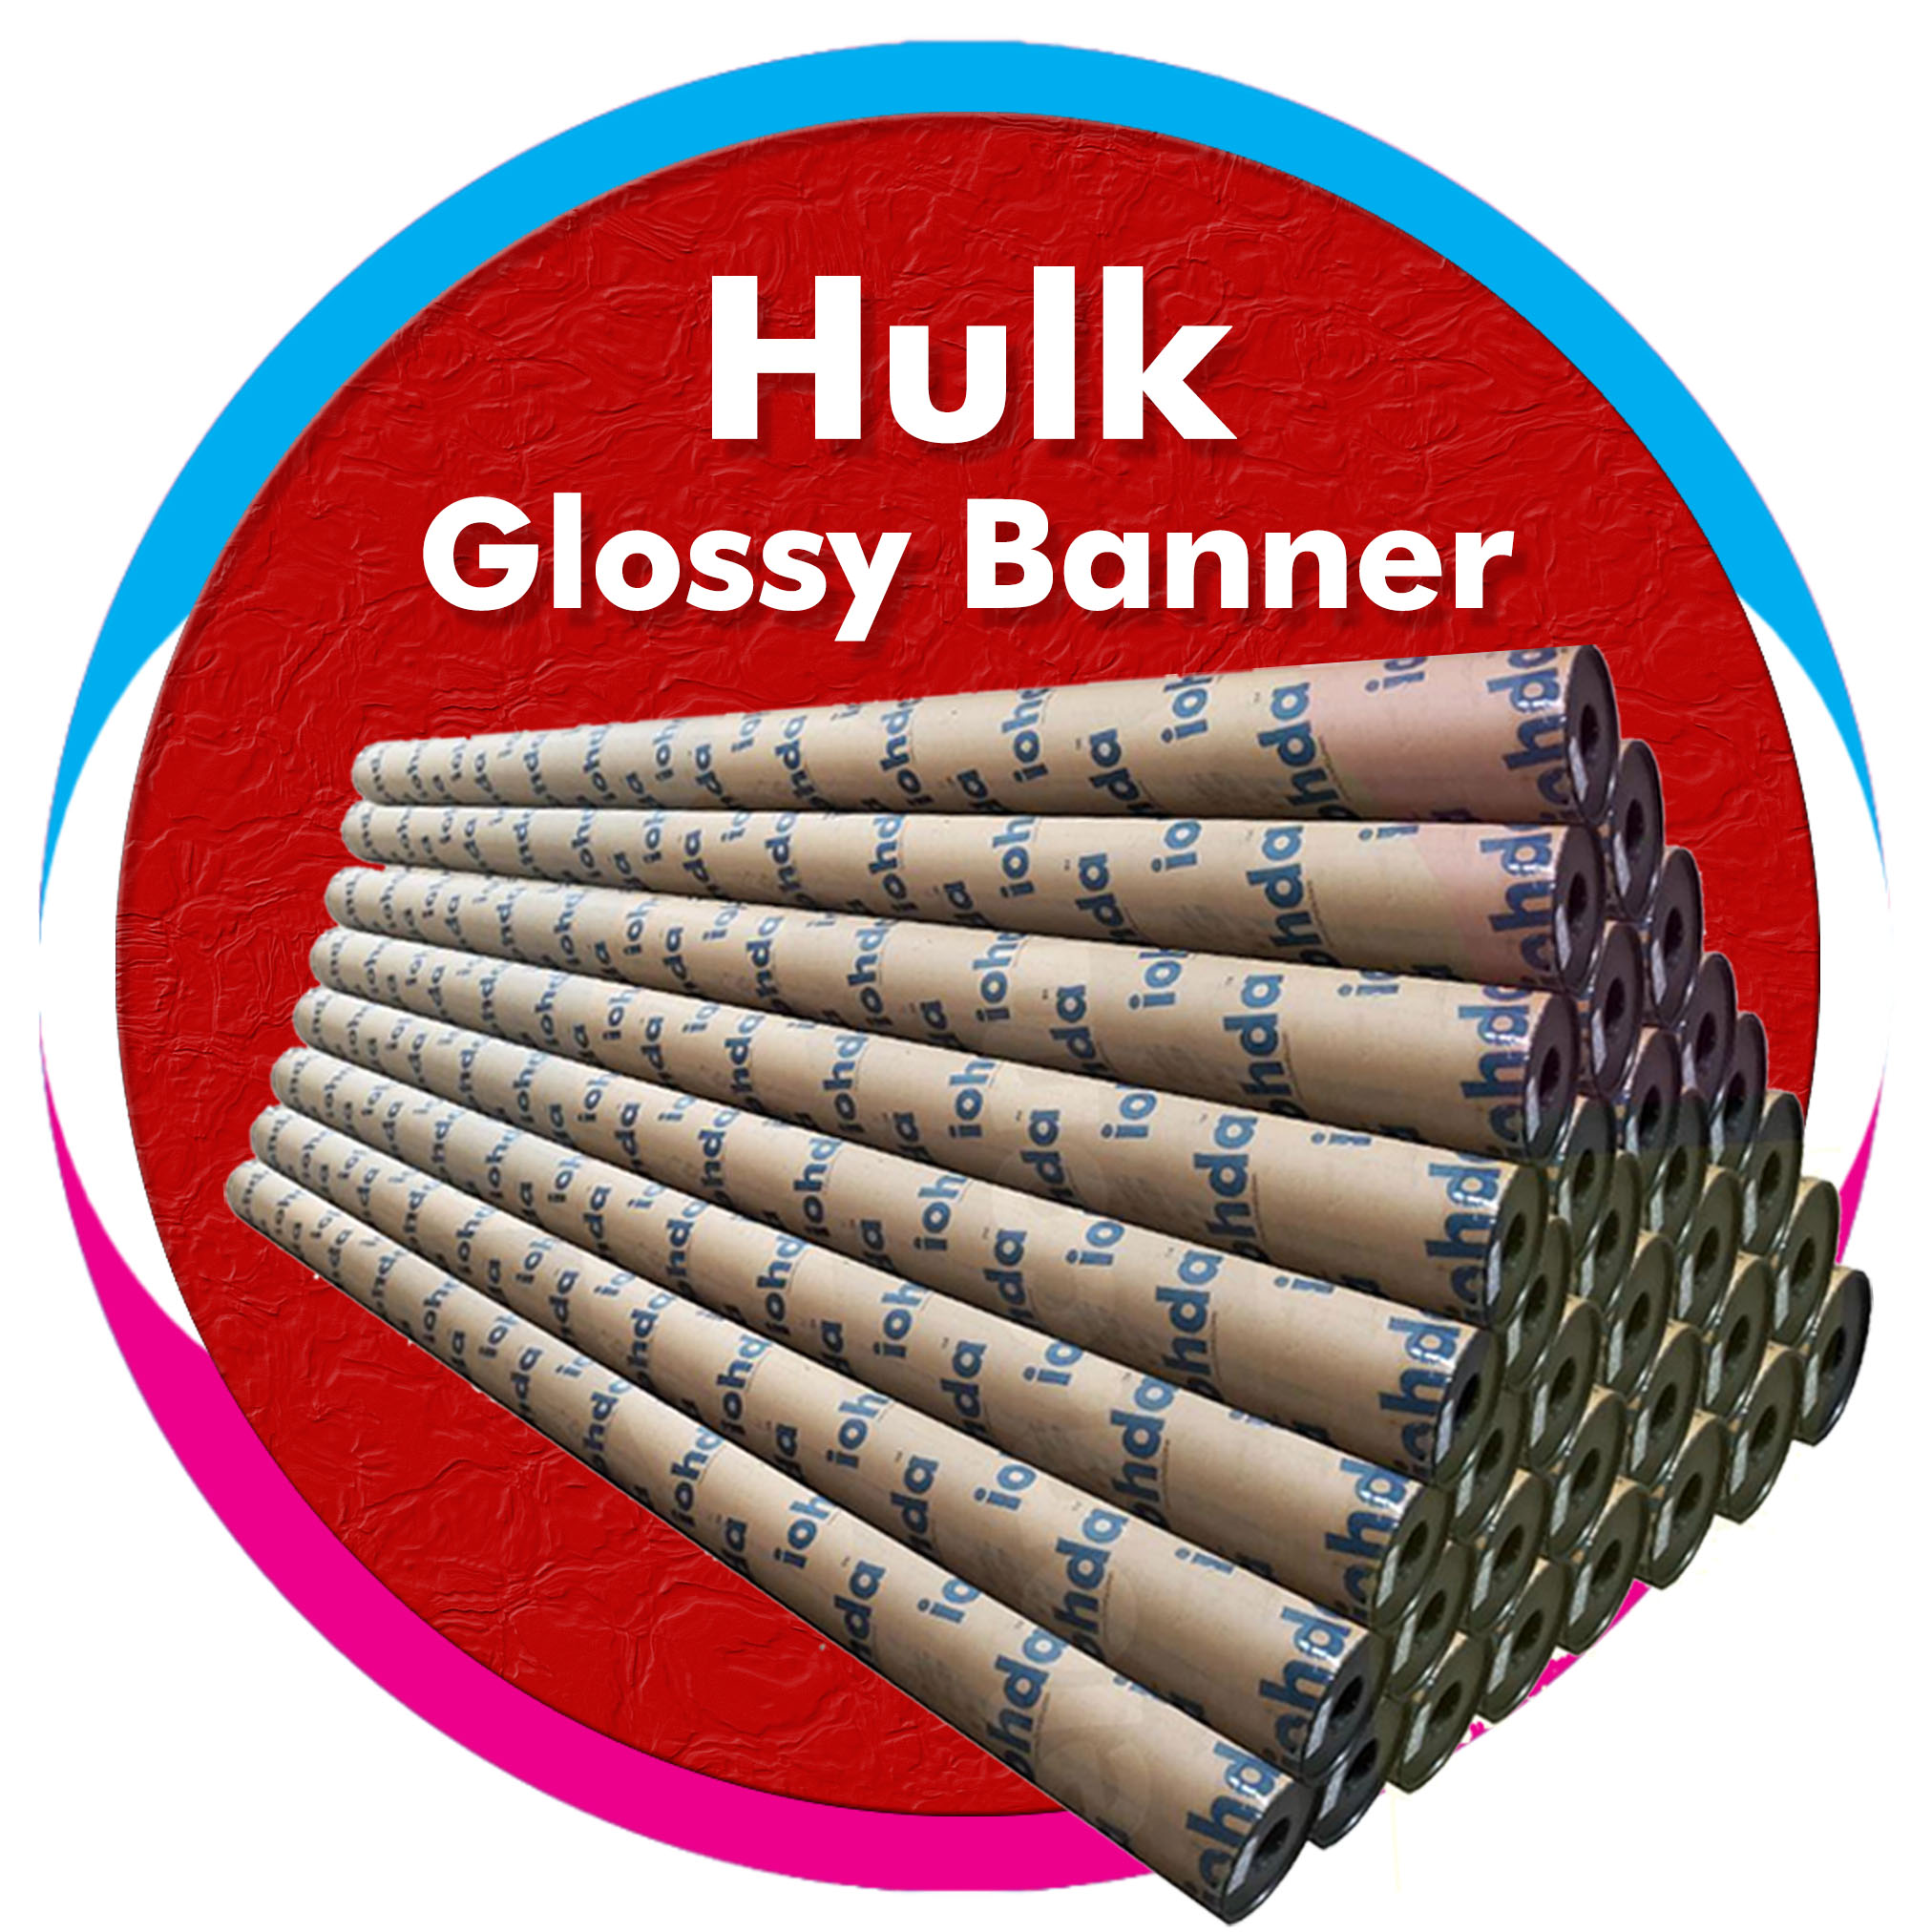 iohda Hulk Glossy Banner